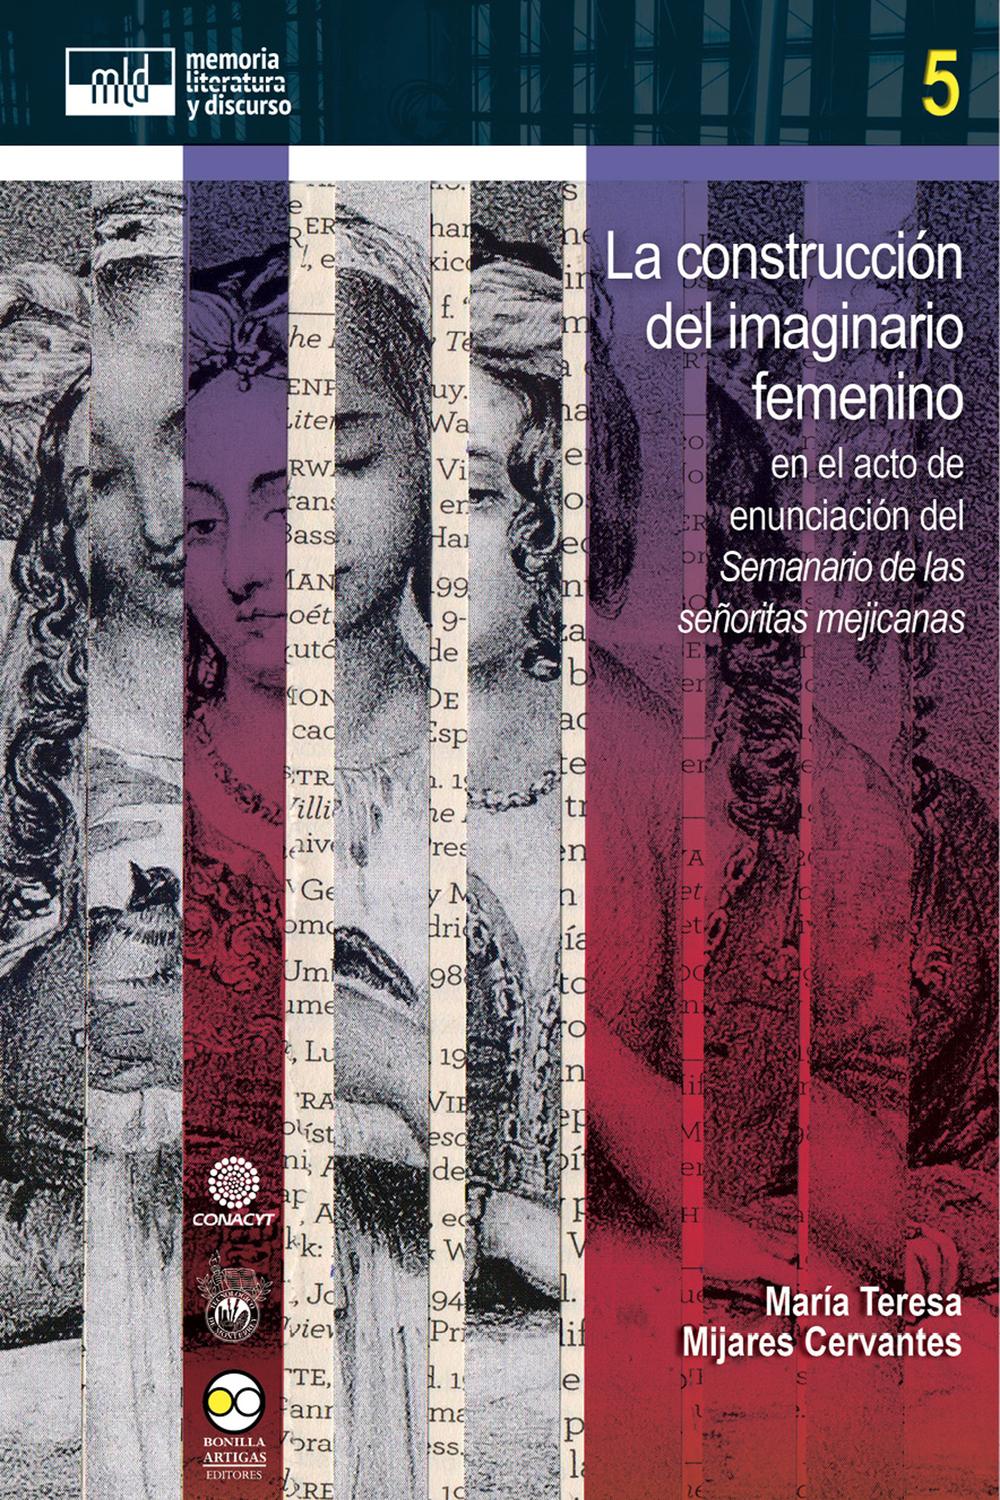 La construcción del imaginario femenino - María Teresa Mijares Cervantes